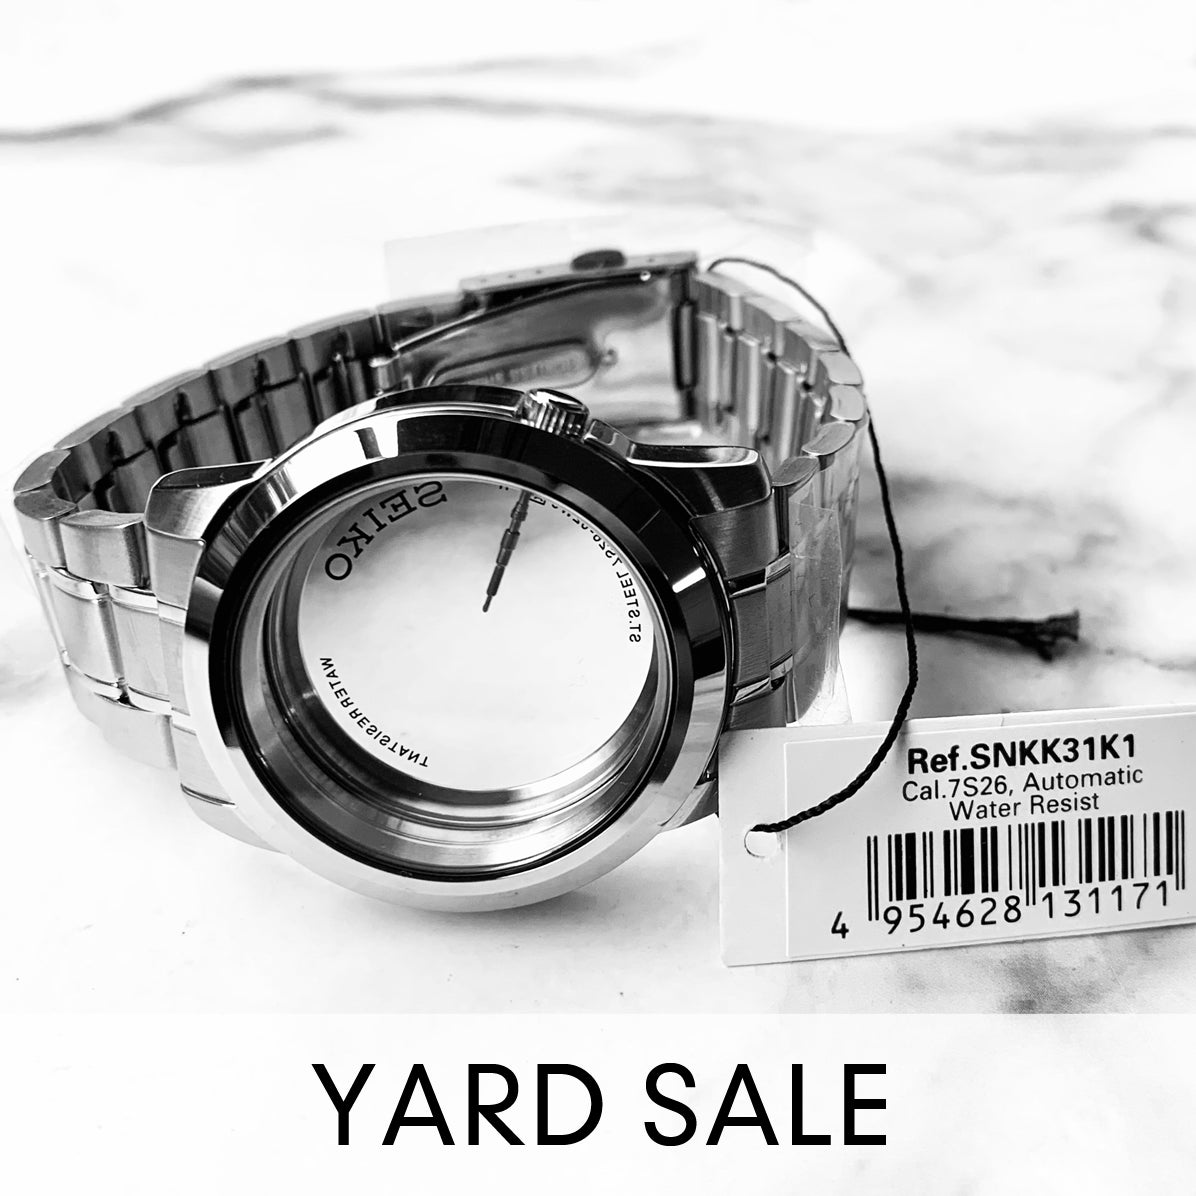 YARD SALE - Case & Bracelet - SNKK31